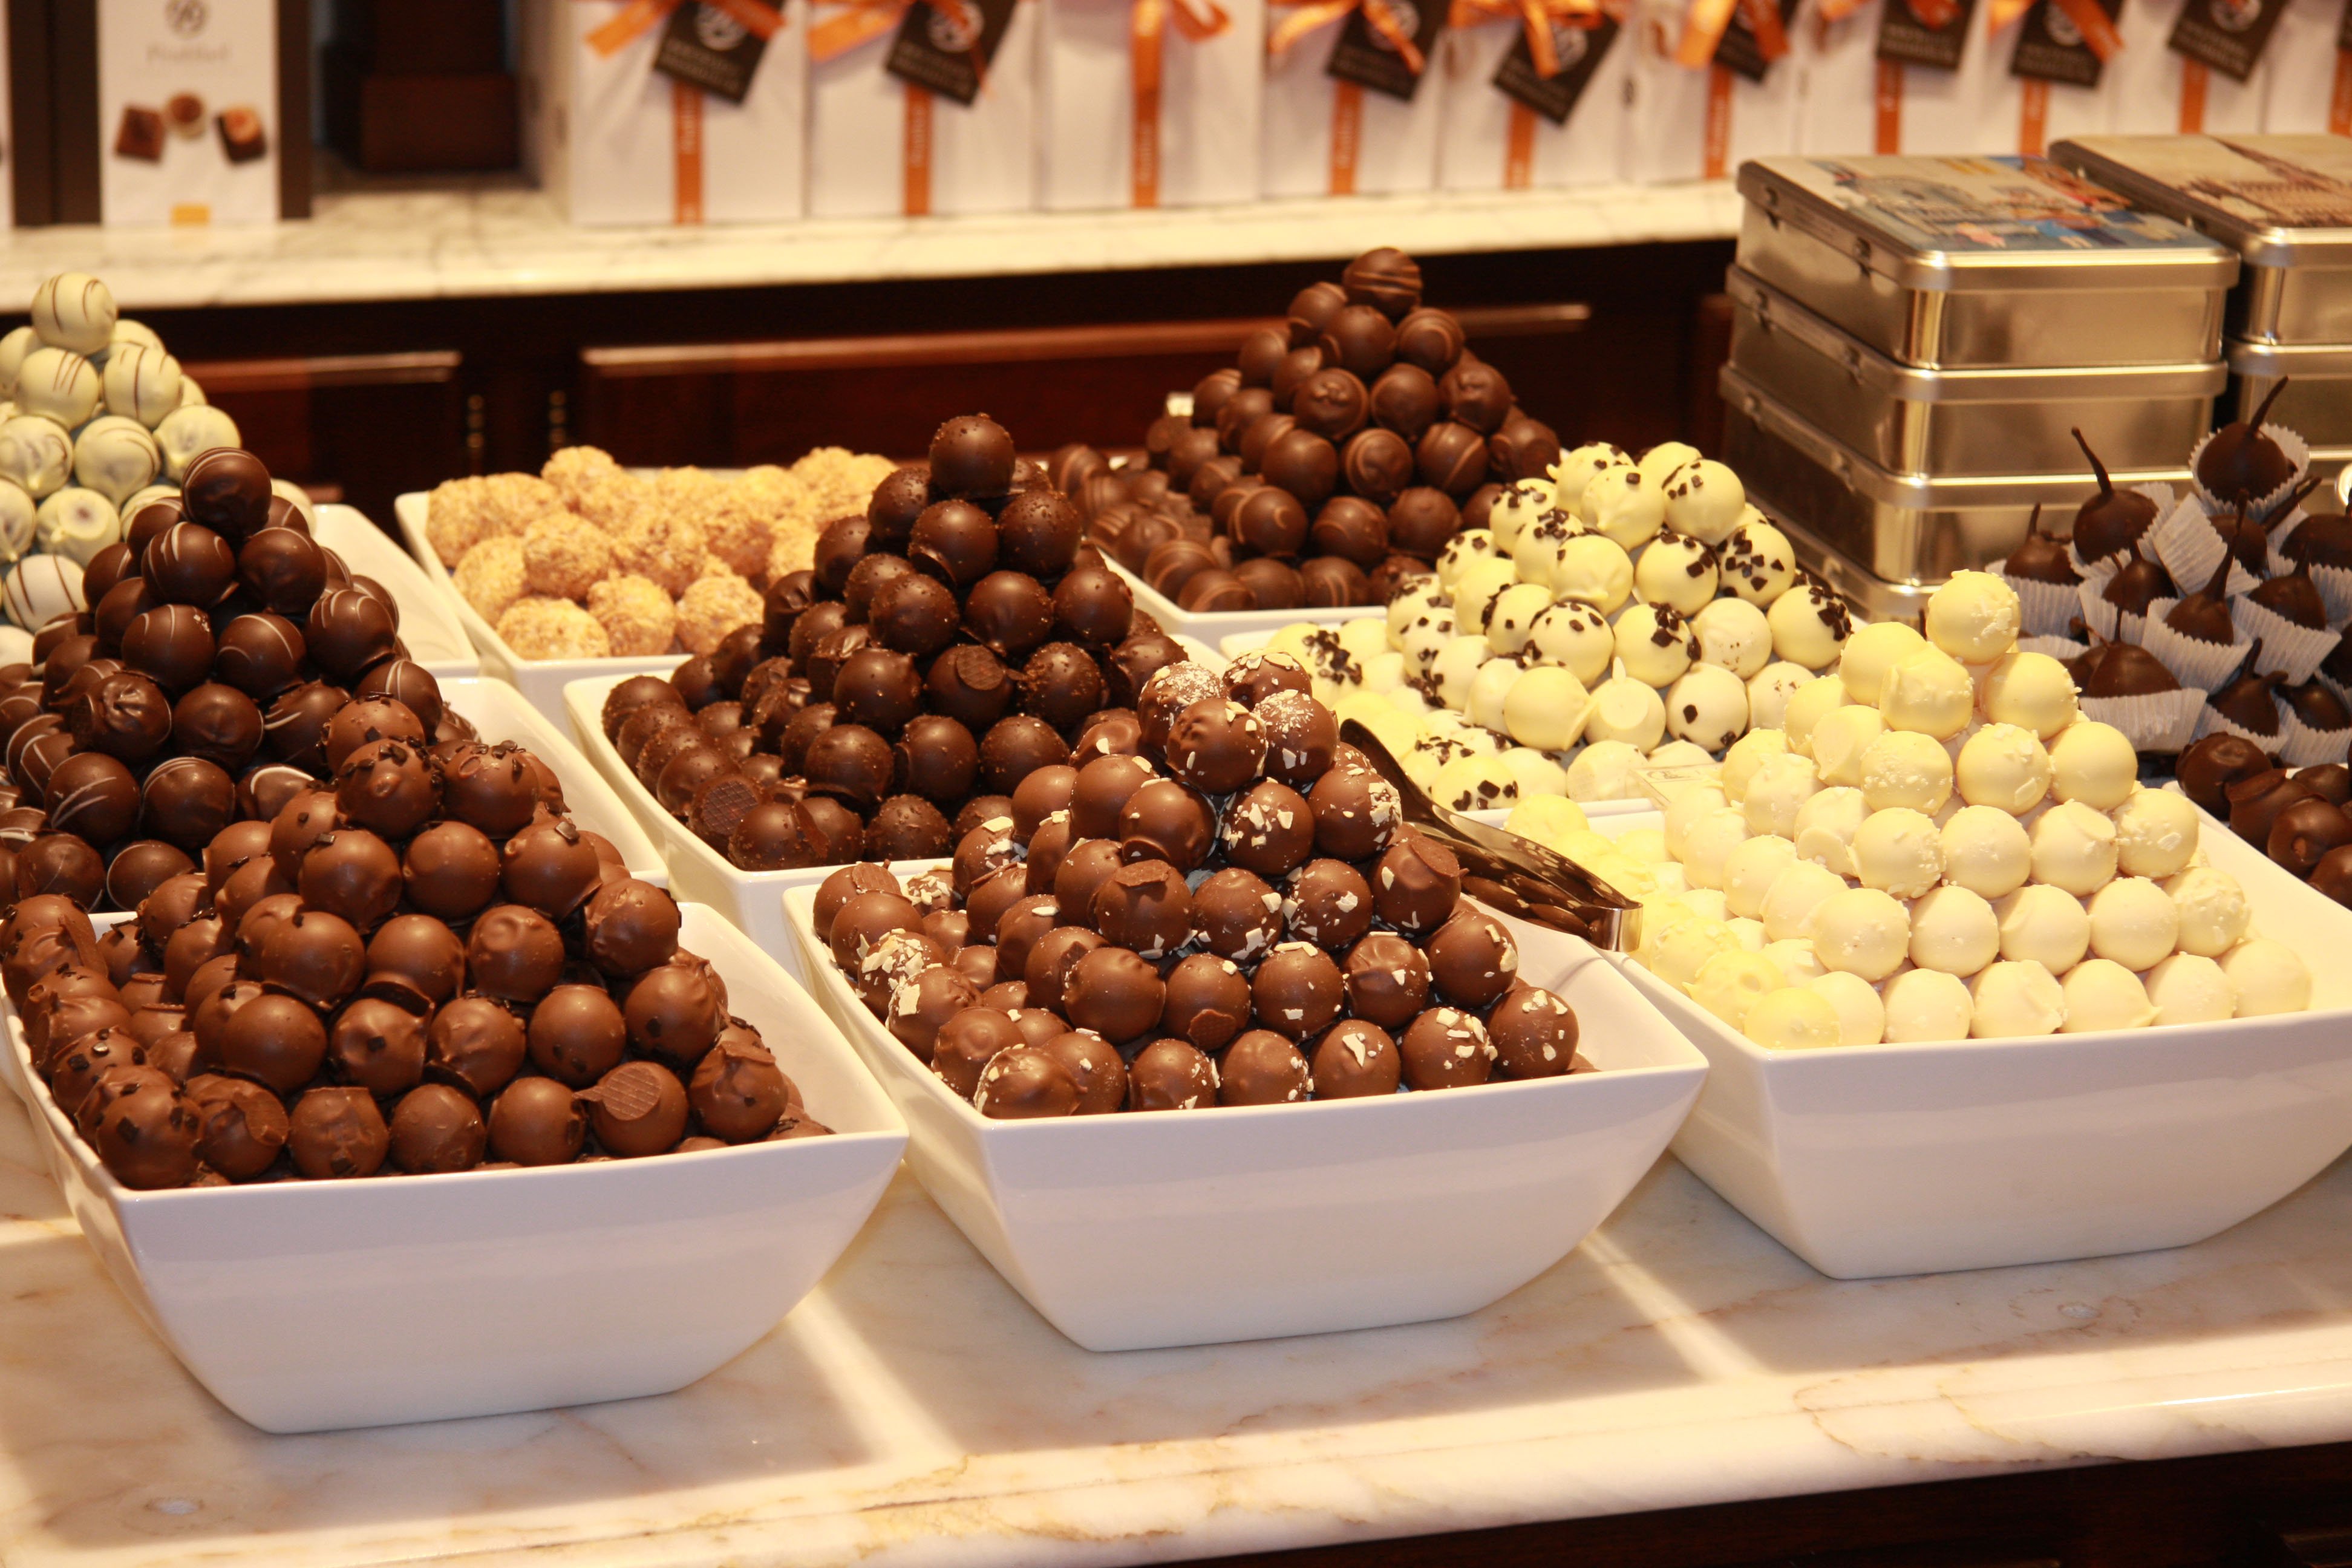 Купить фабрику шоколадных конфет. Patisserie шоколад бельгийский. Бельгия шоколадная фабрика. Дудник бельгийский шоколад. Бельгийский шоколад кондитерский.